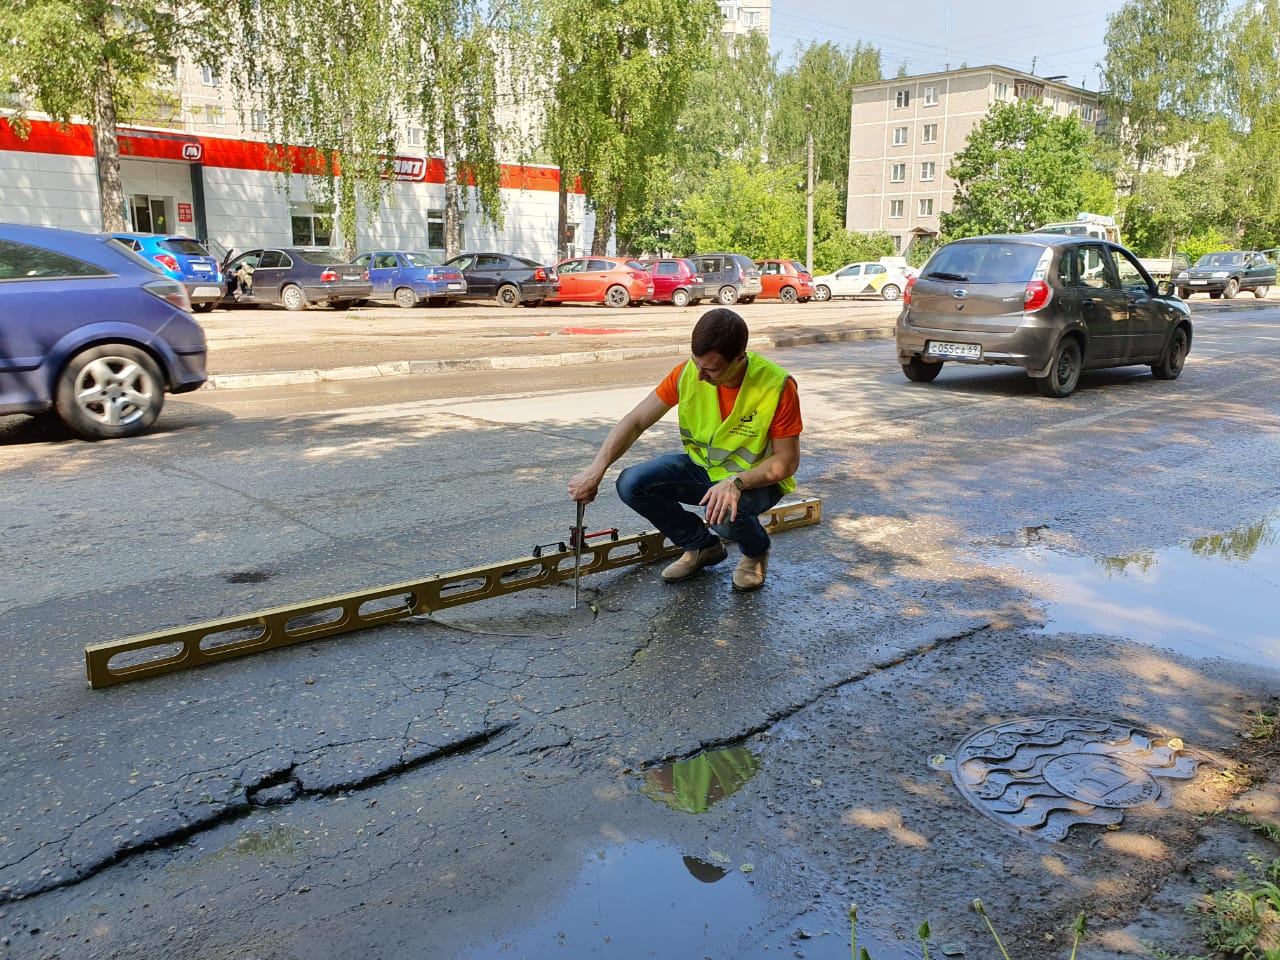 Нет фирмы – нет гарантий: организация, ремонтировавшая дороги в Твери в 2016 году, прекратила свою деятельность